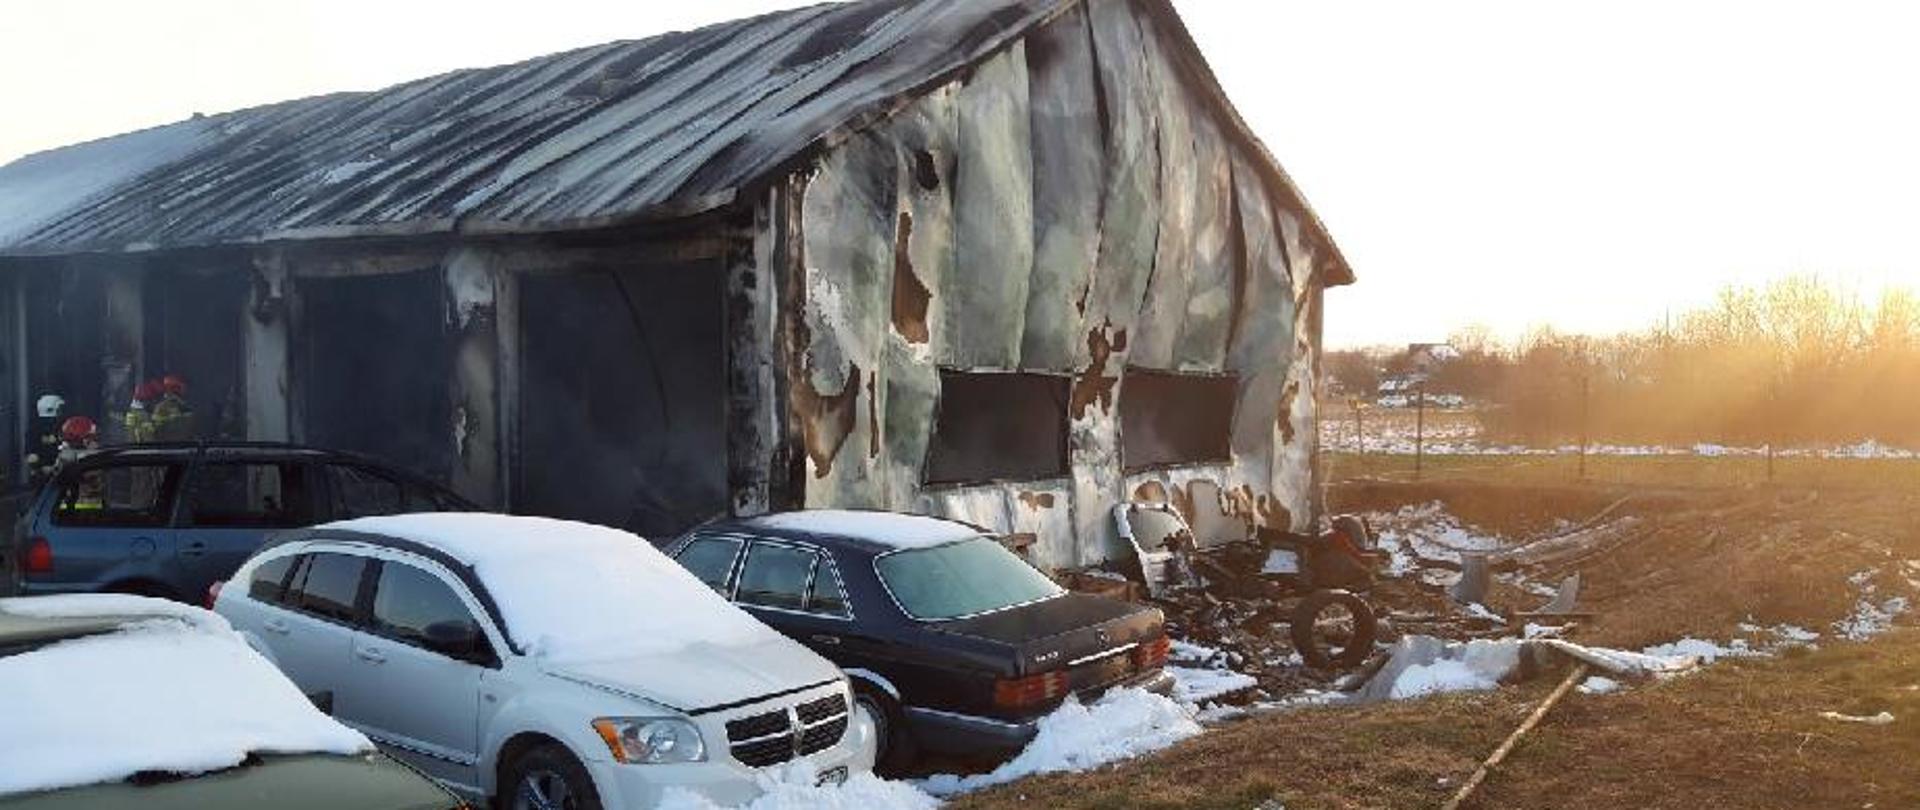 Fotografia przedstawia zniszczony przez ogień warsztat samochodowy. Pogięta blacha ścian świadczy o wysokiej temperaturze jaka na nią działała.